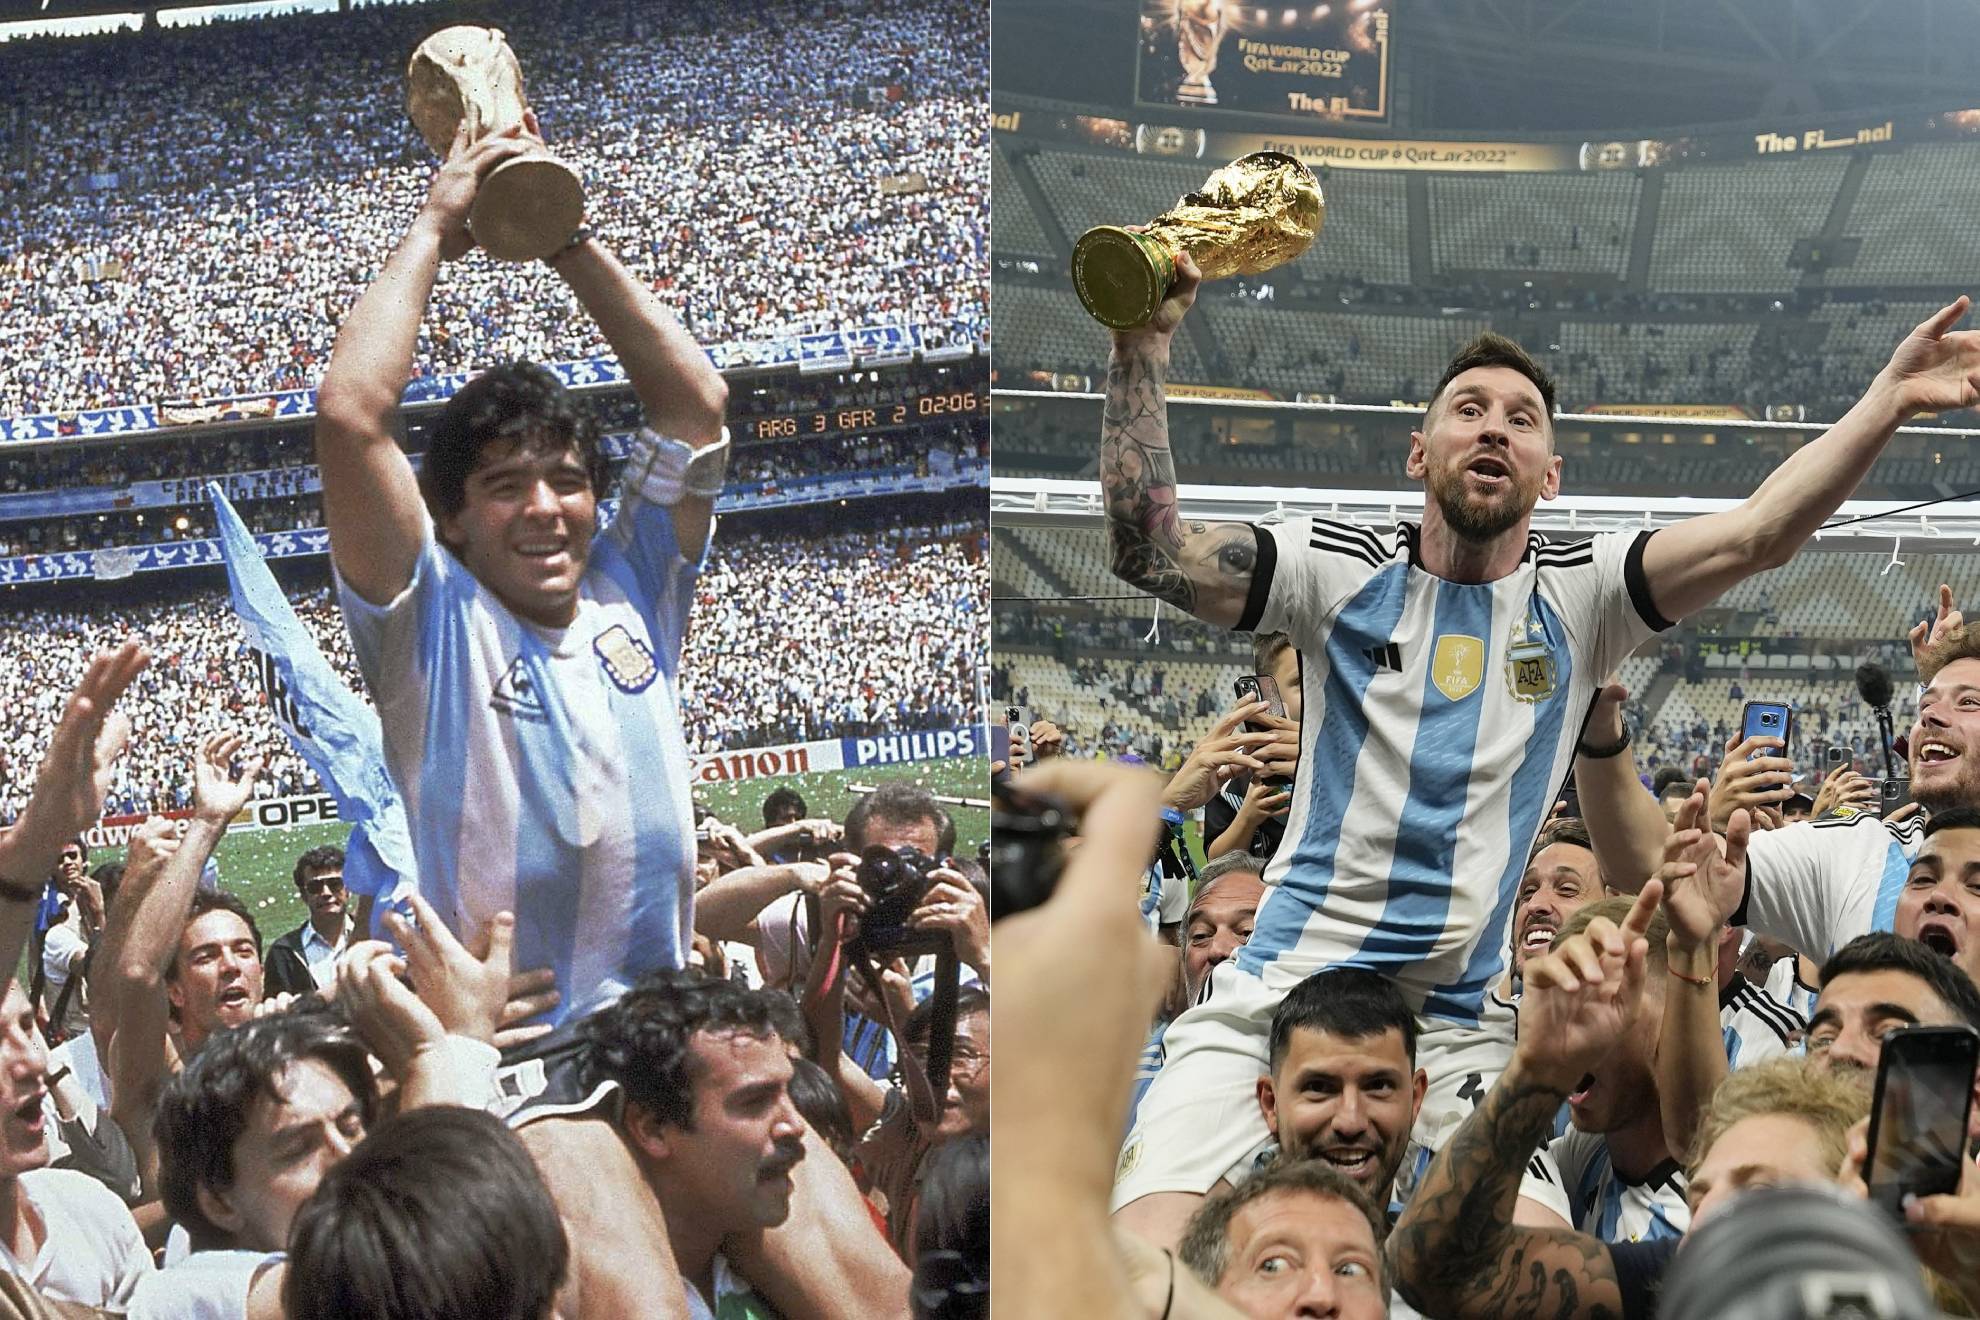 Thật tuyệt vời khi thấy Messi và các đồng đội ăn mừng vô địch tại World Cup. Tất cả những cú đánh đầu, những pha đá phạt, và nỗ lực không biết mệt mỏi đã được đền đáp xứng đáng. Đón xem bức hình này để có được những cảm xúc mãnh liệt nhất.